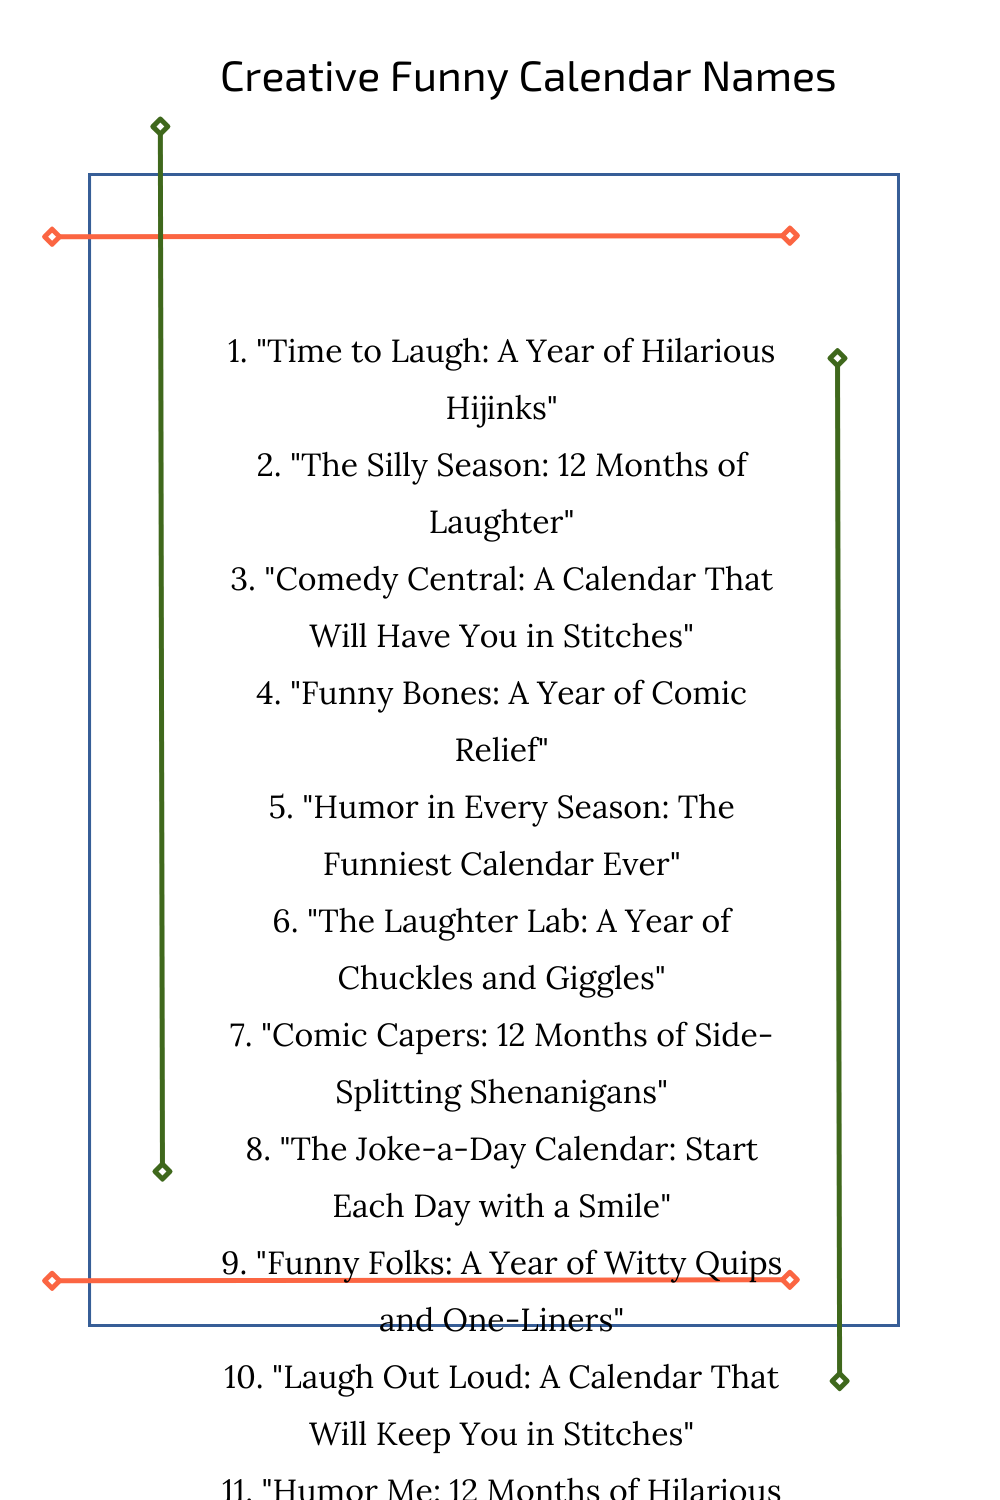 Creative Funny Calendar Names